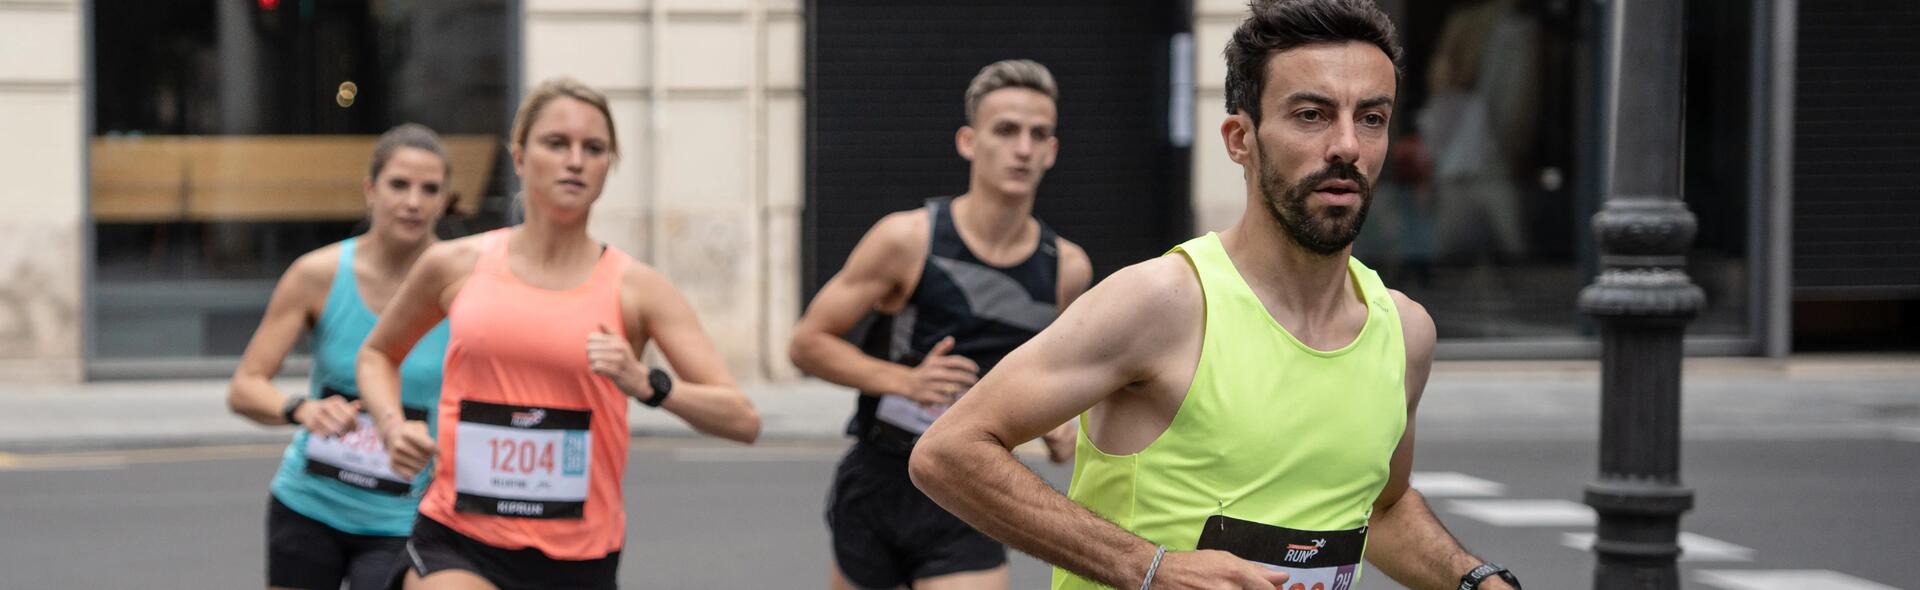 ludzie ubrani w stroje do biegania biegną w maratonie